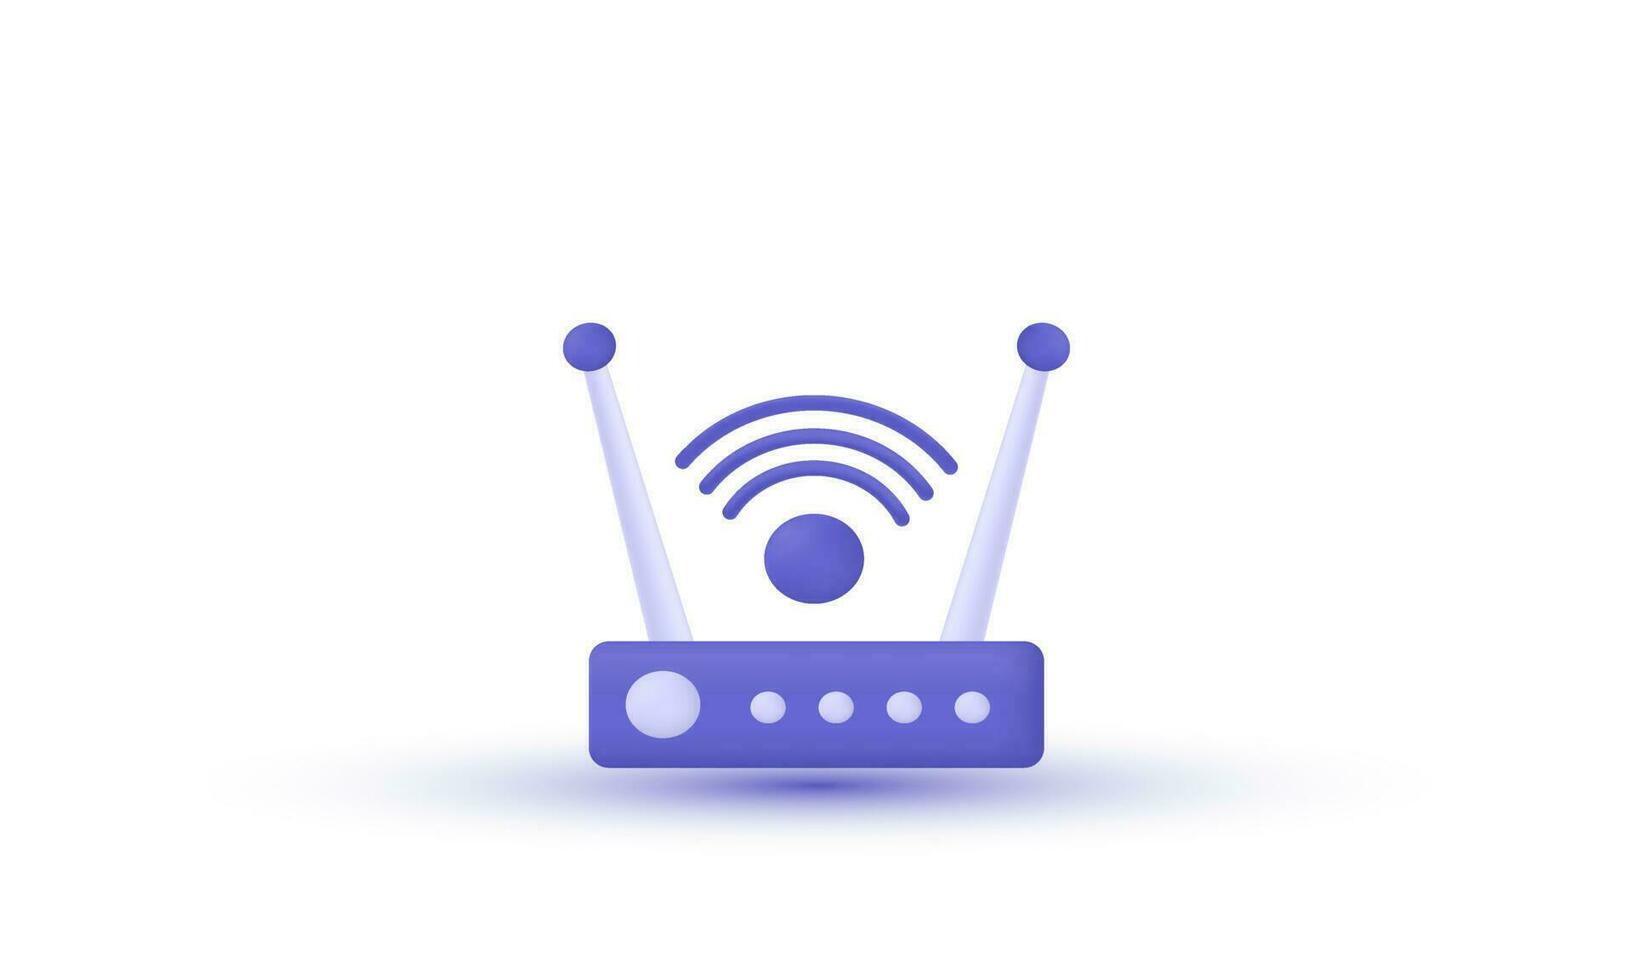 3d réaliste vecteur l'Internet Wifi routeur illustration branché icône moderne style objet symboles illustration isolé sur Contexte